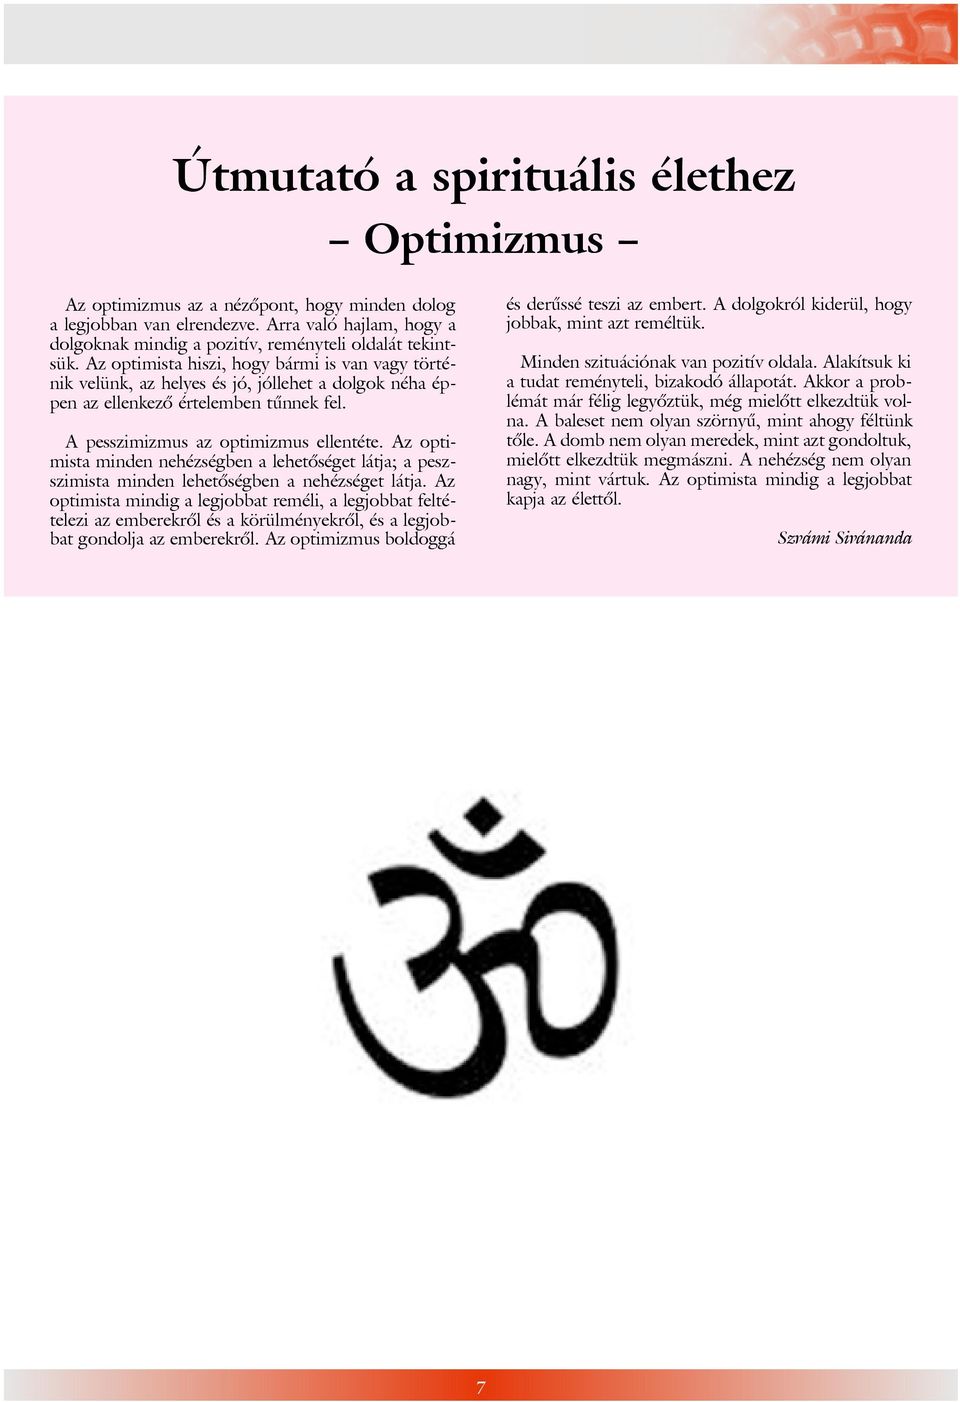 Az optimista minden nehézségben a lehetõséget látja; a peszszimista minden lehetõségben a nehézséget látja.